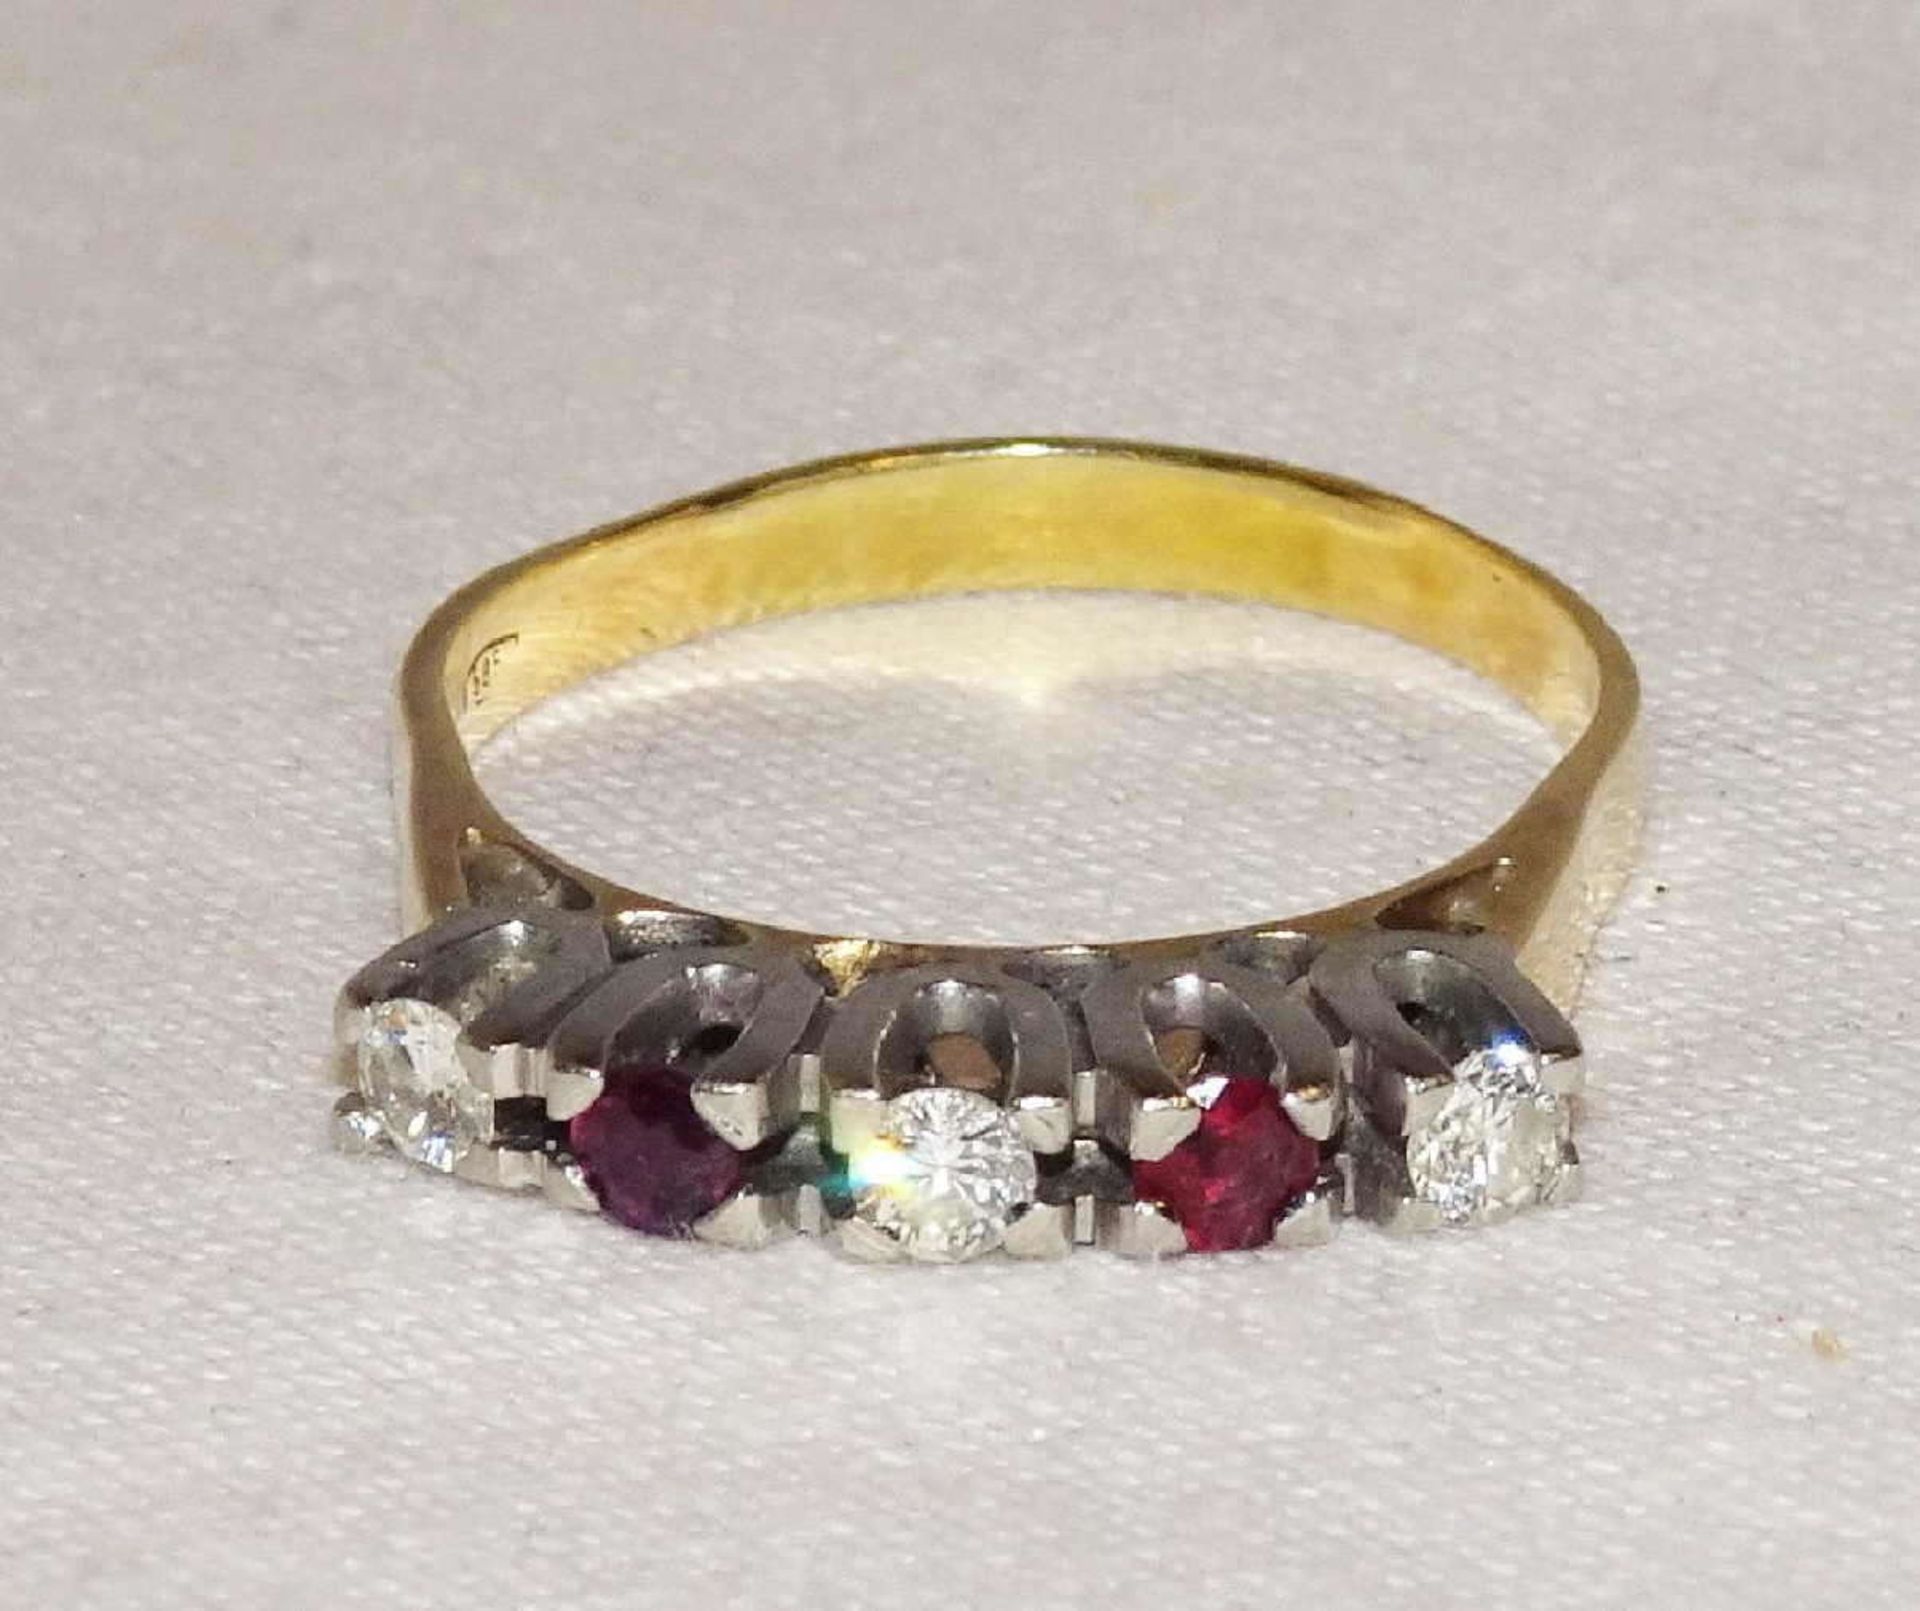 Damenring, 585er Gelbgold, besetzt mit Rubinen und Brillanten. Ringgröße 58. Gewicht ca. 3,62 gr. - Bild 3 aus 3